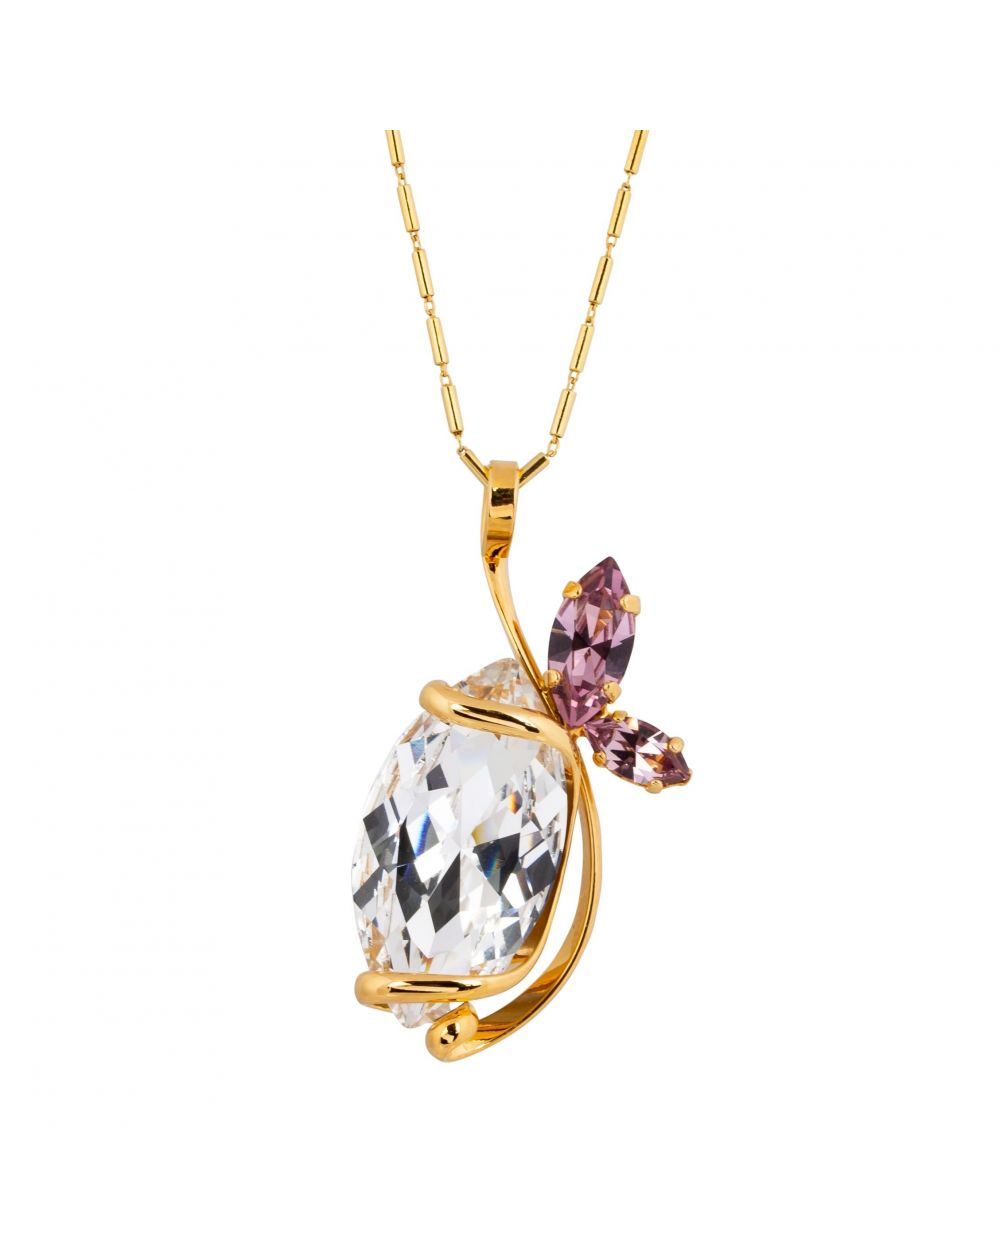 oval Swarovski mint crystal necklace